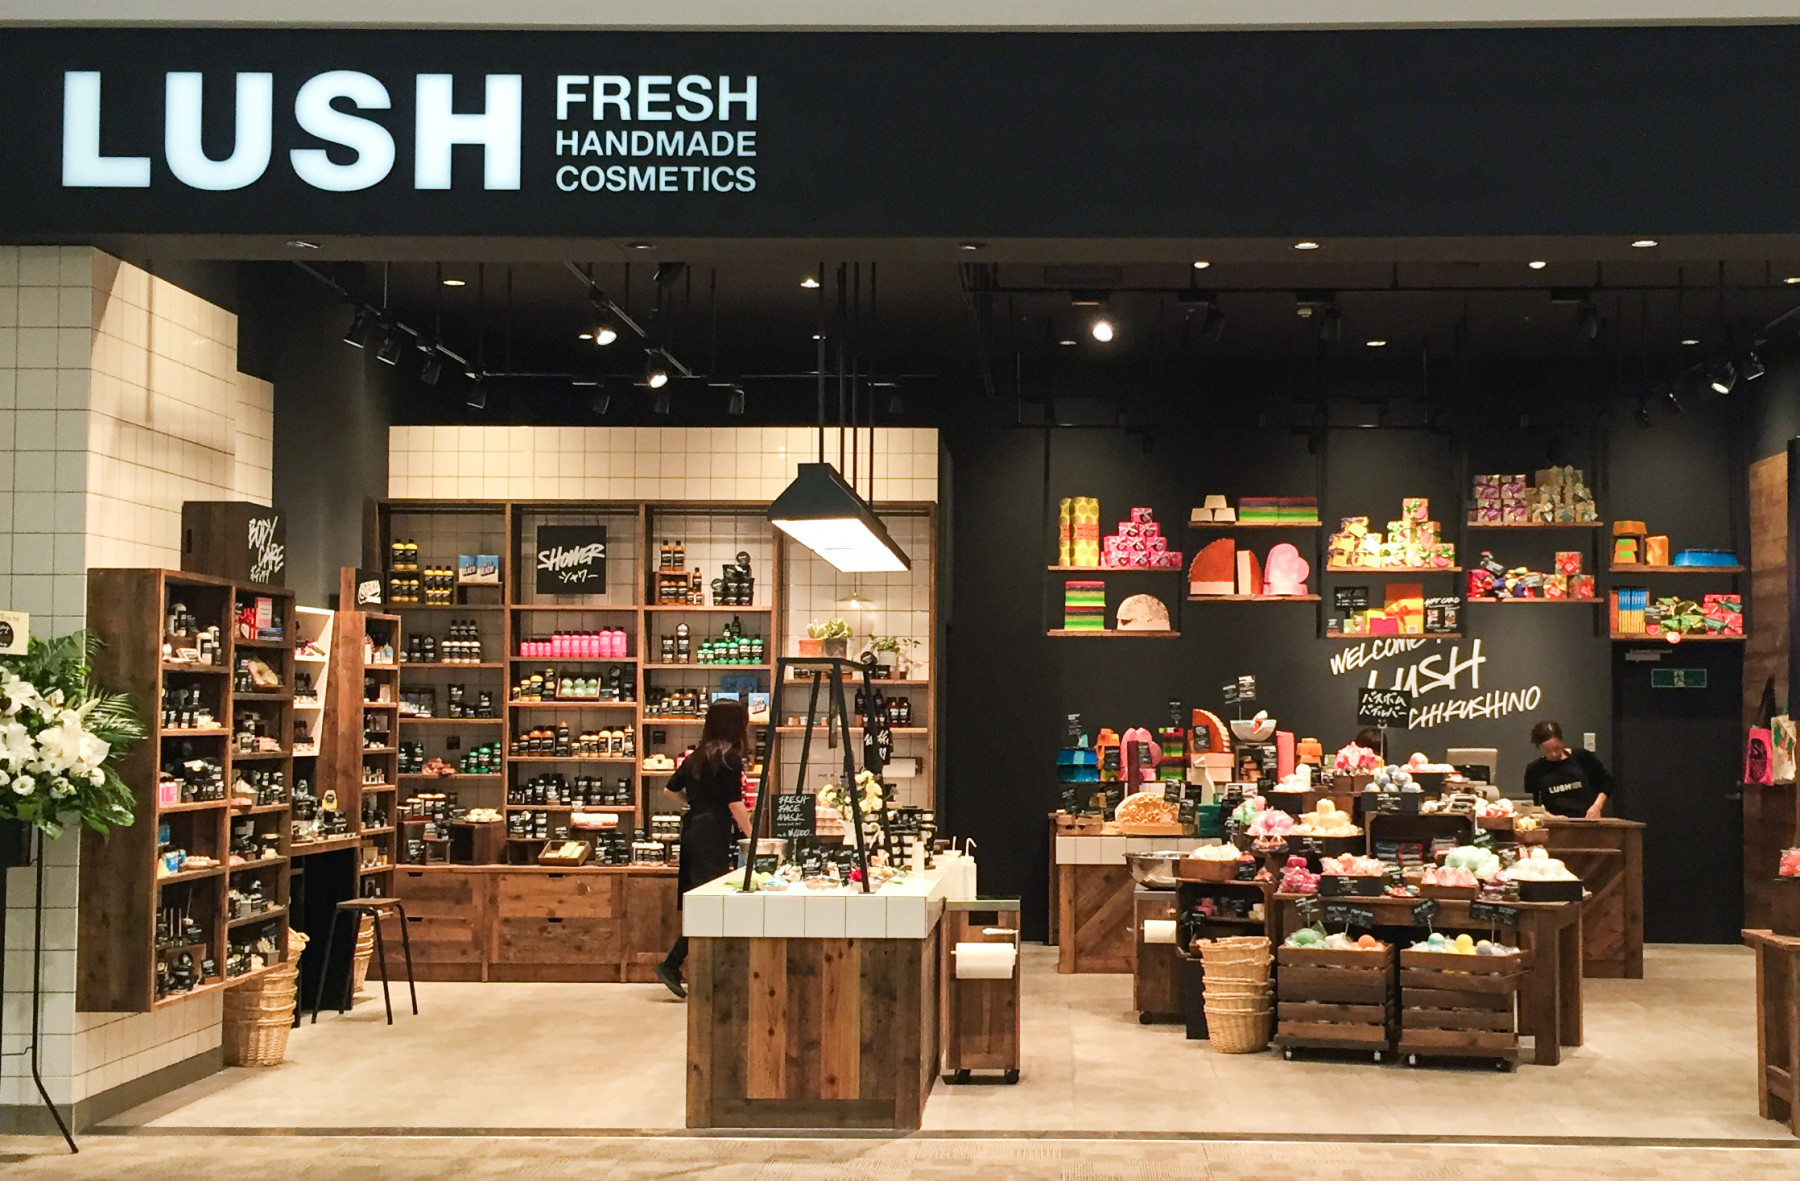 イオンモール筑紫野店 ラッシュ公式サイト Lush Fresh Handmade Cosmetics